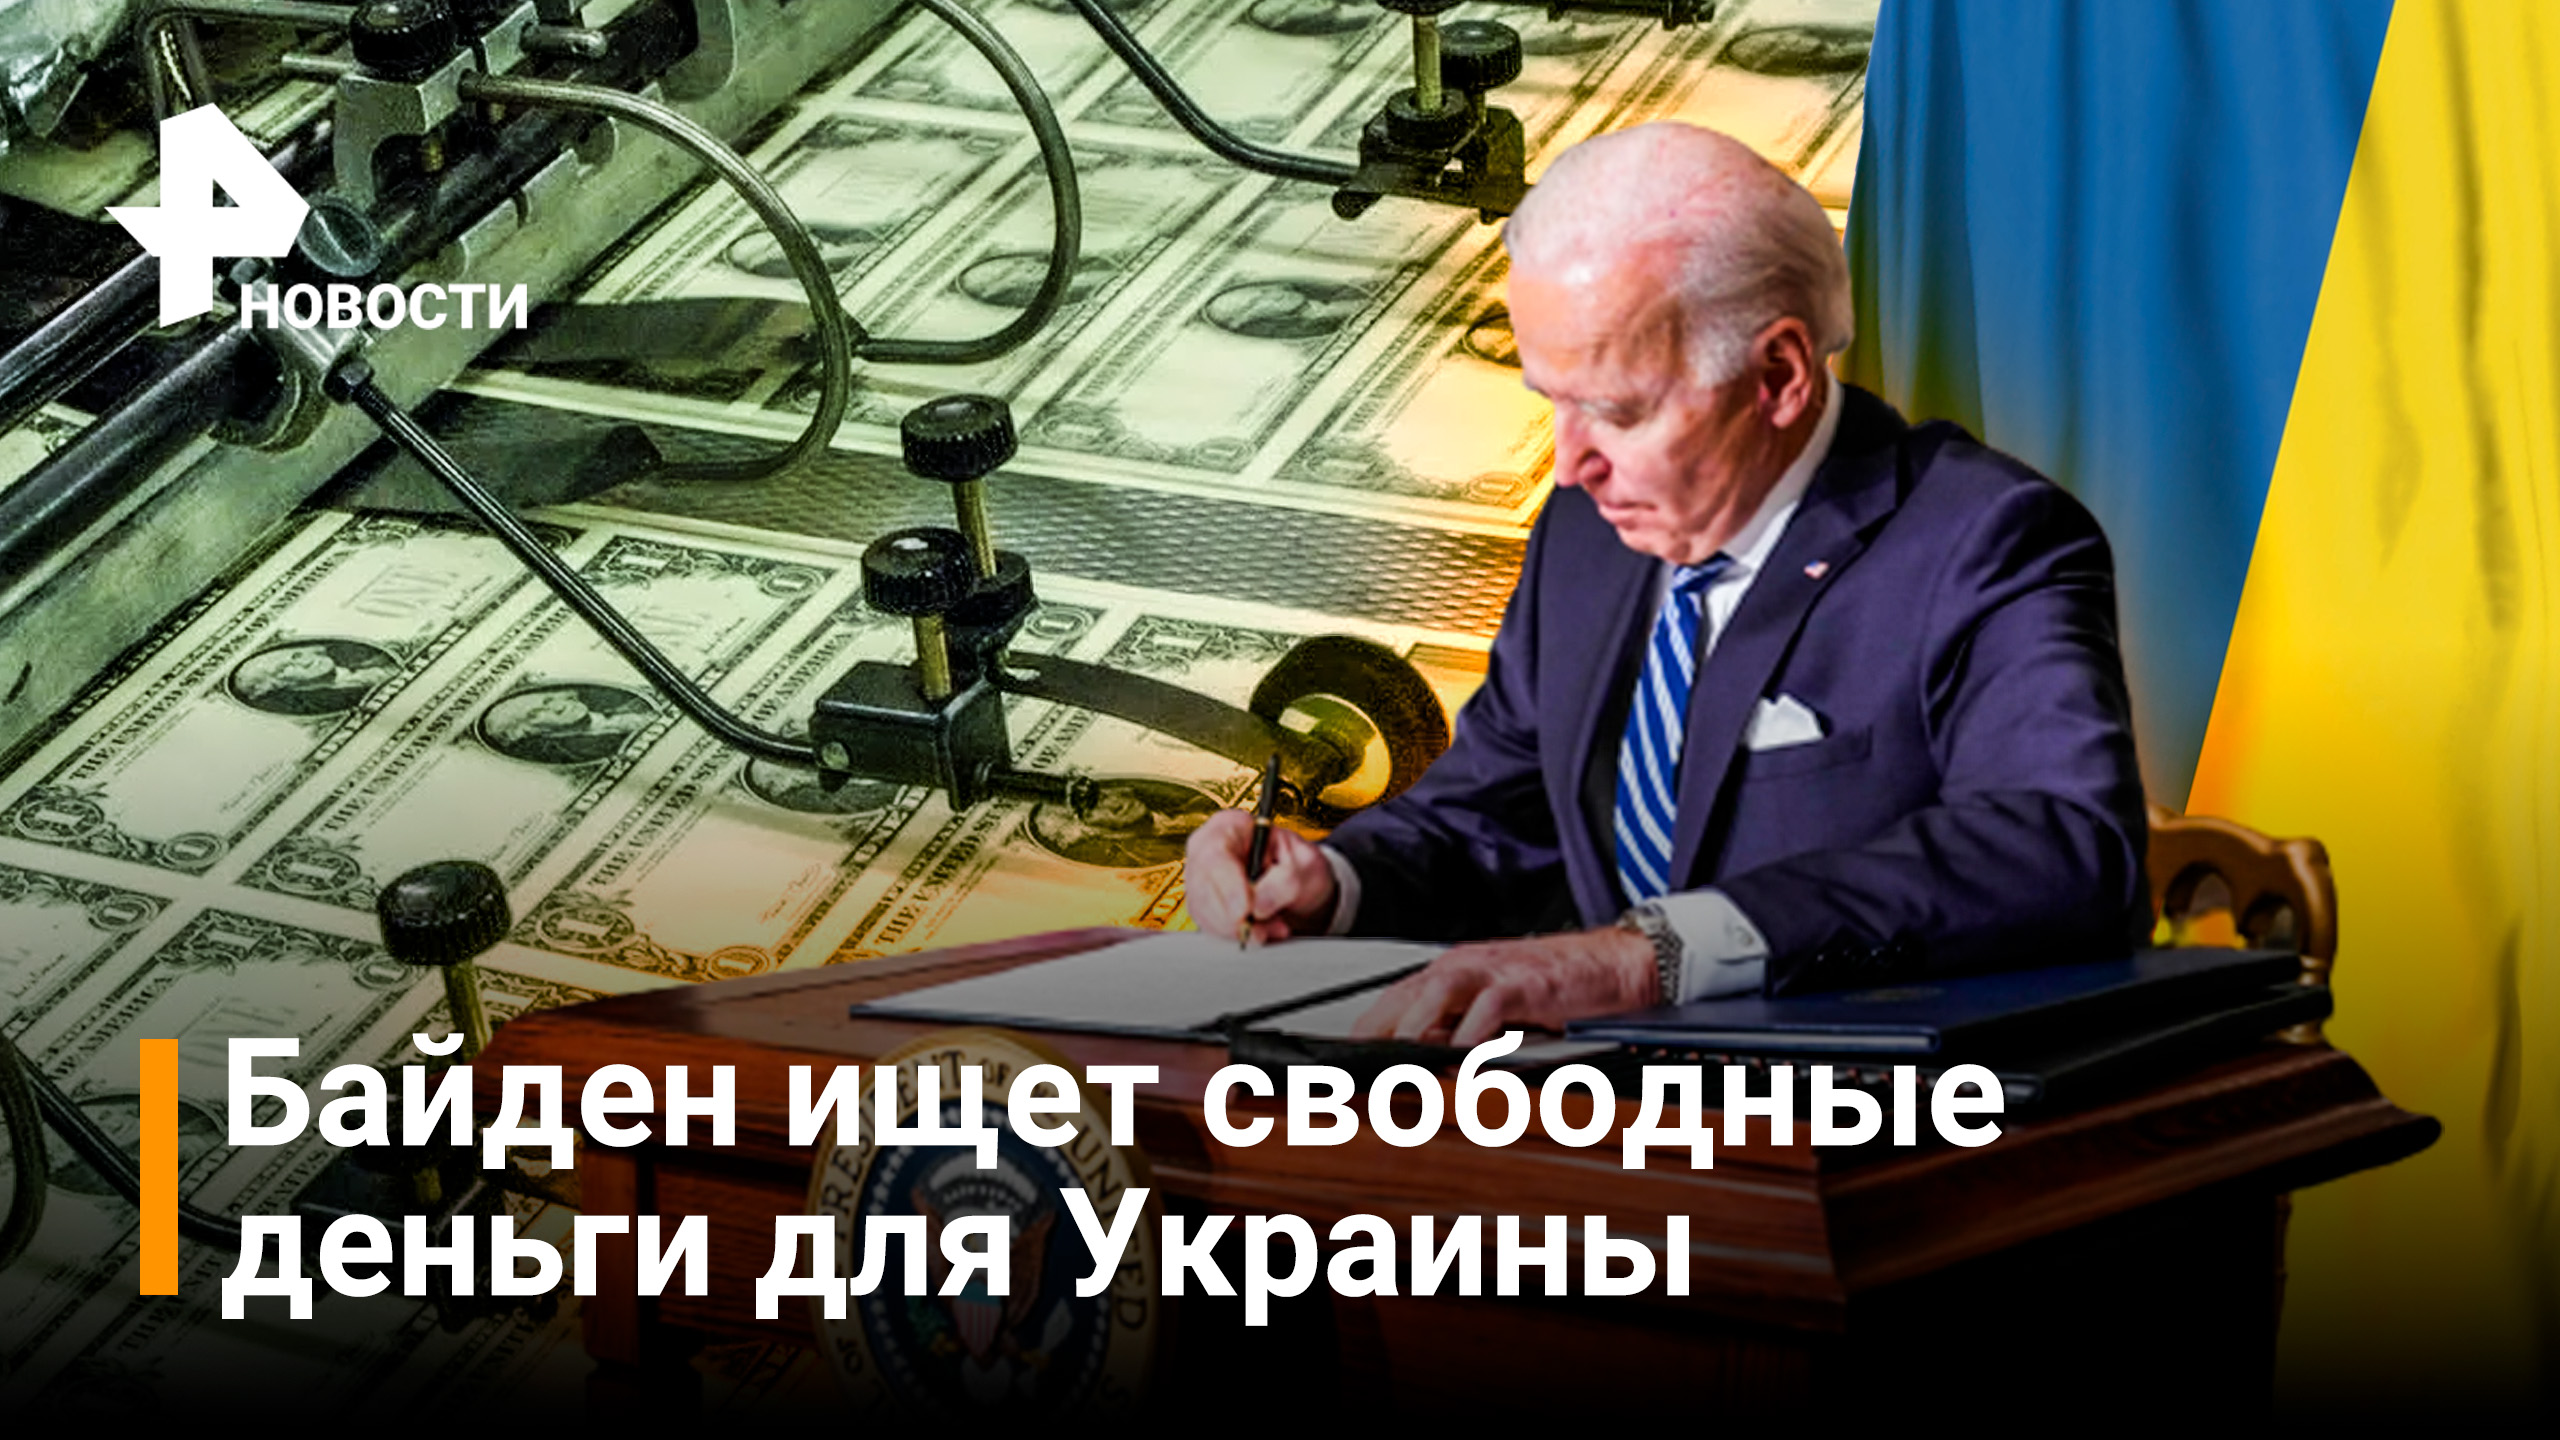 Байден решил изымать деньги у российских олигархов для поддержки Украины / Новости РЕН